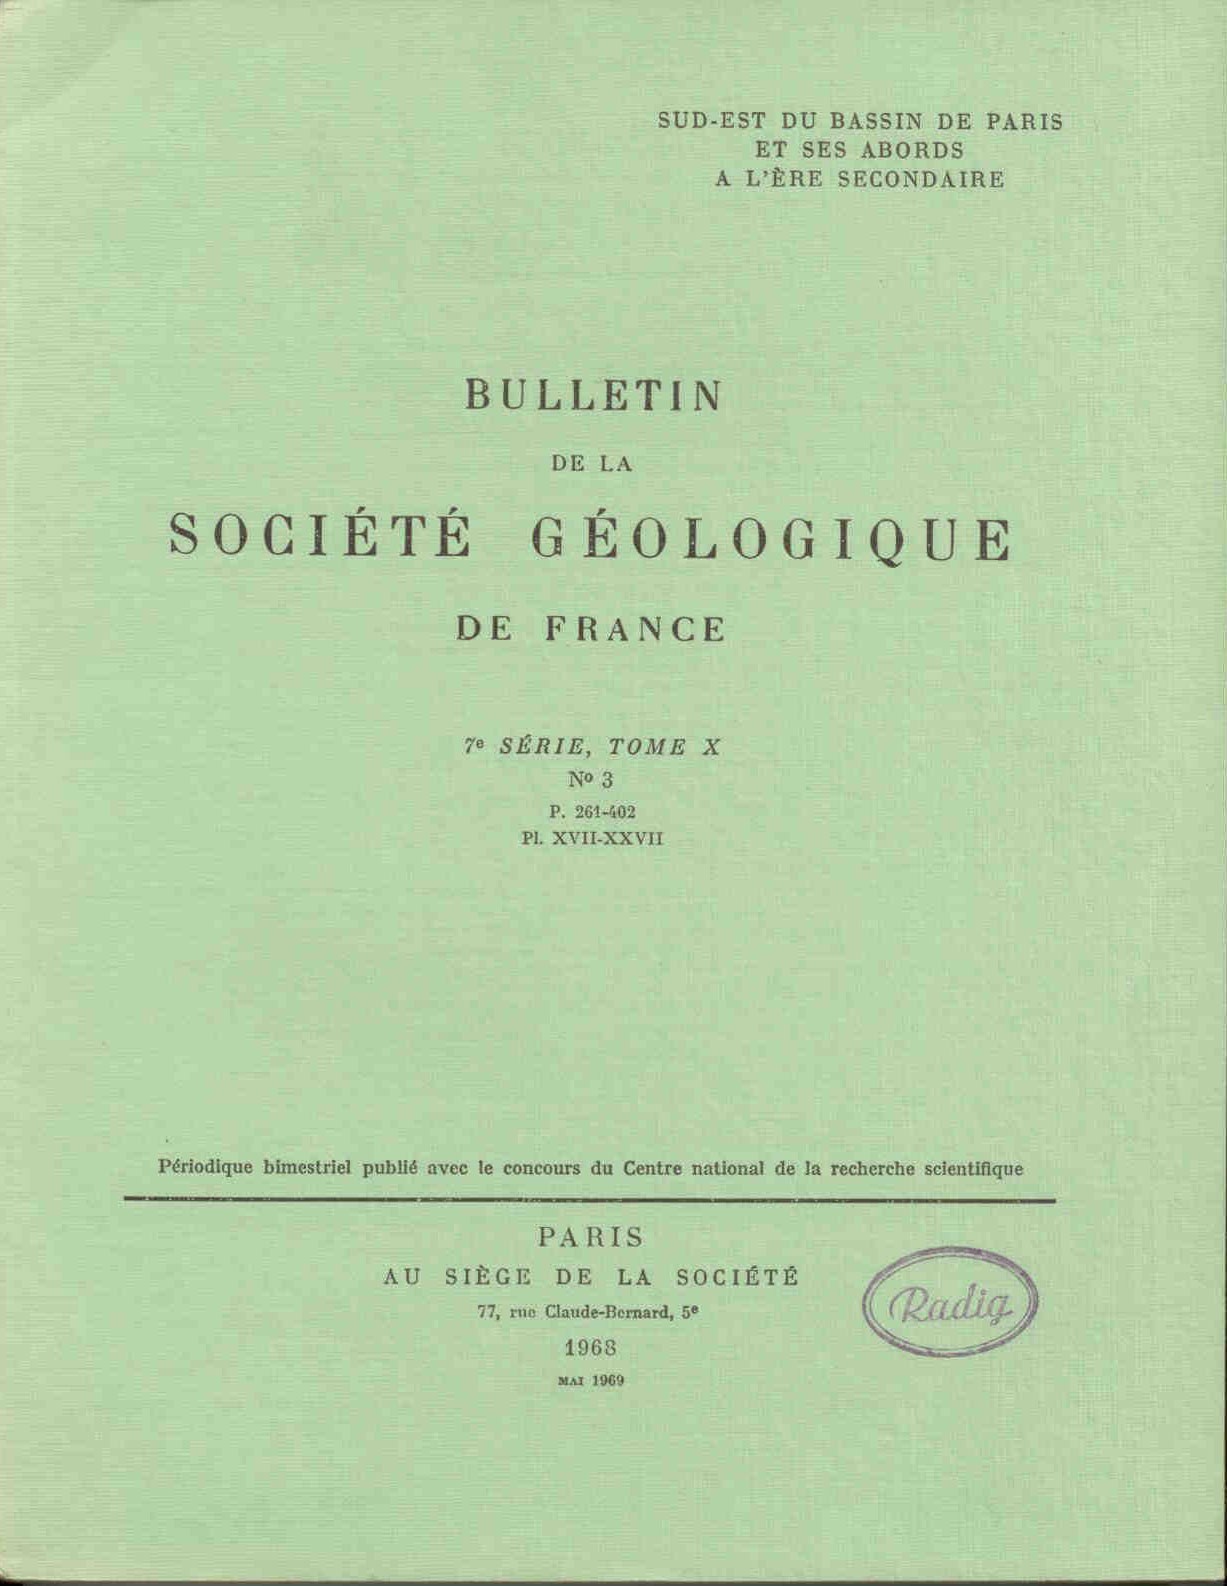 Collectif: Bulletin de la Societe Geologique de France. 7e serie, tome X.